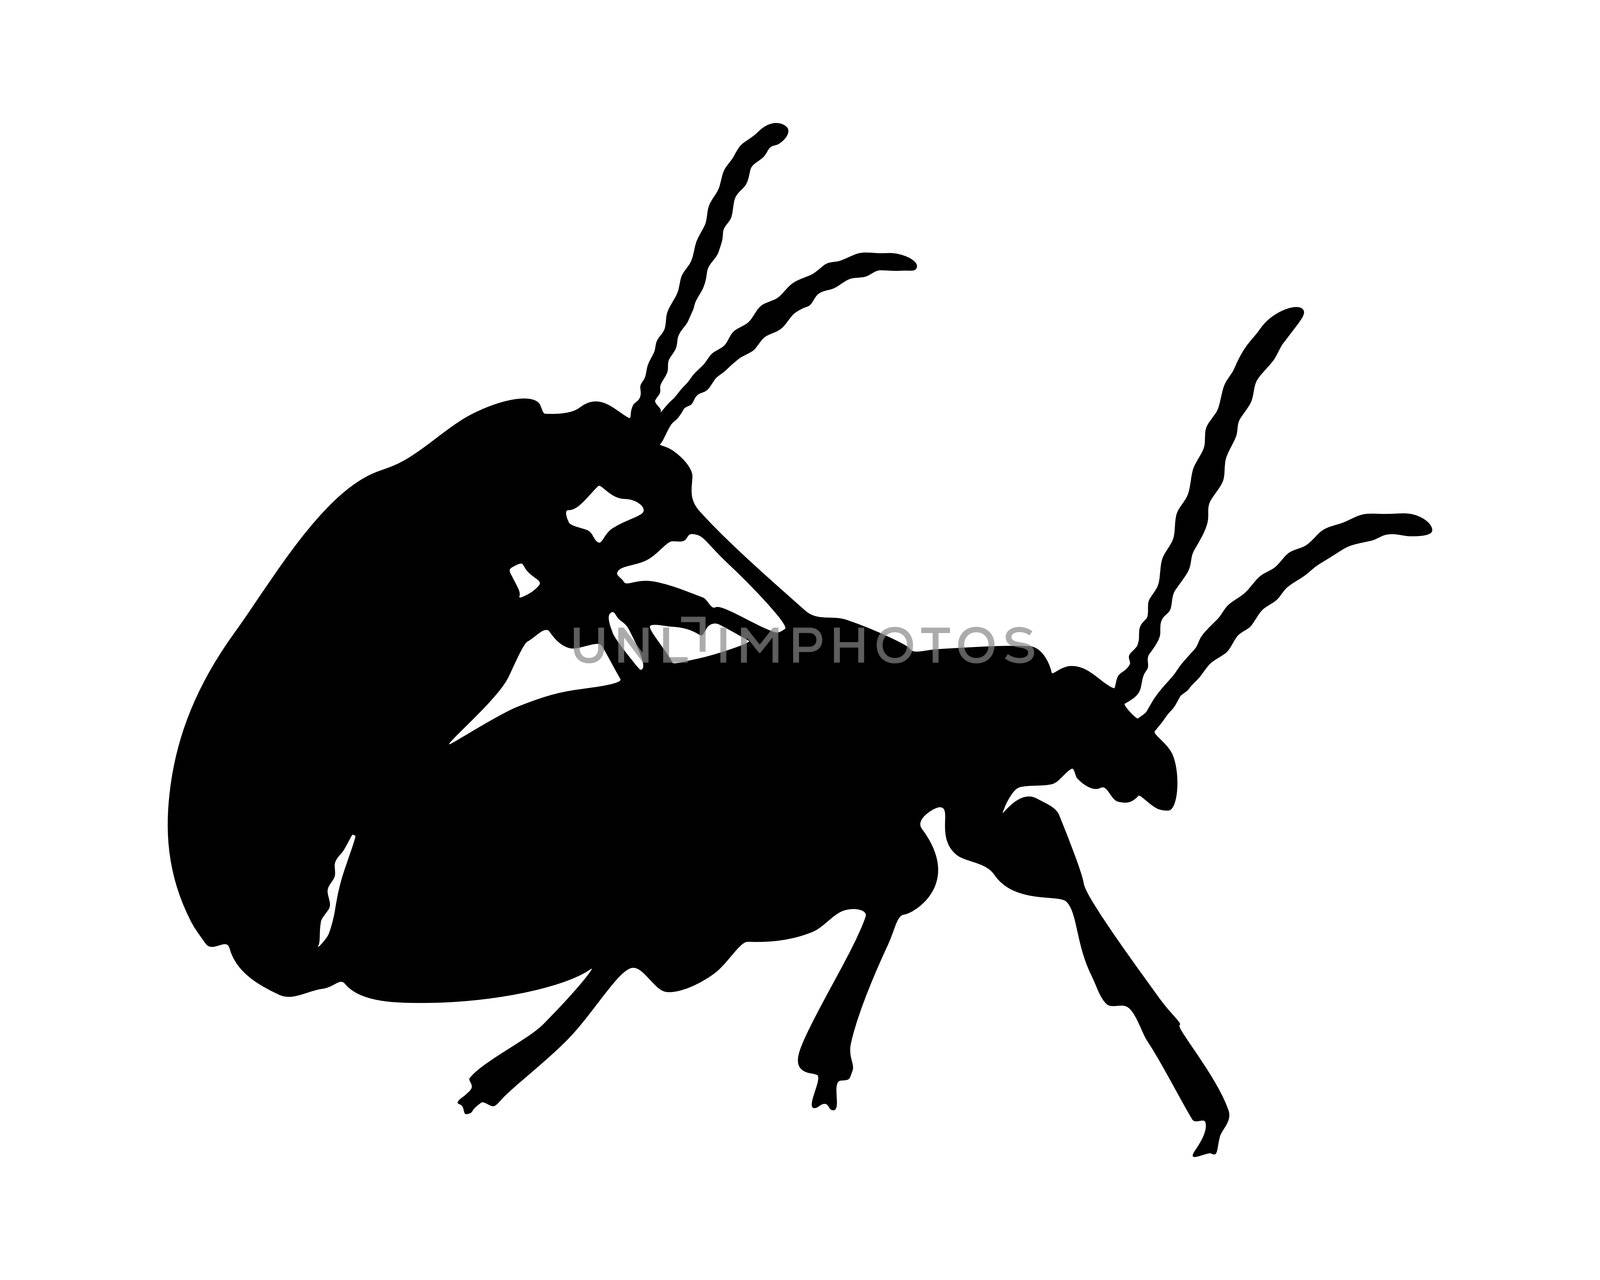 Beetles in copulation